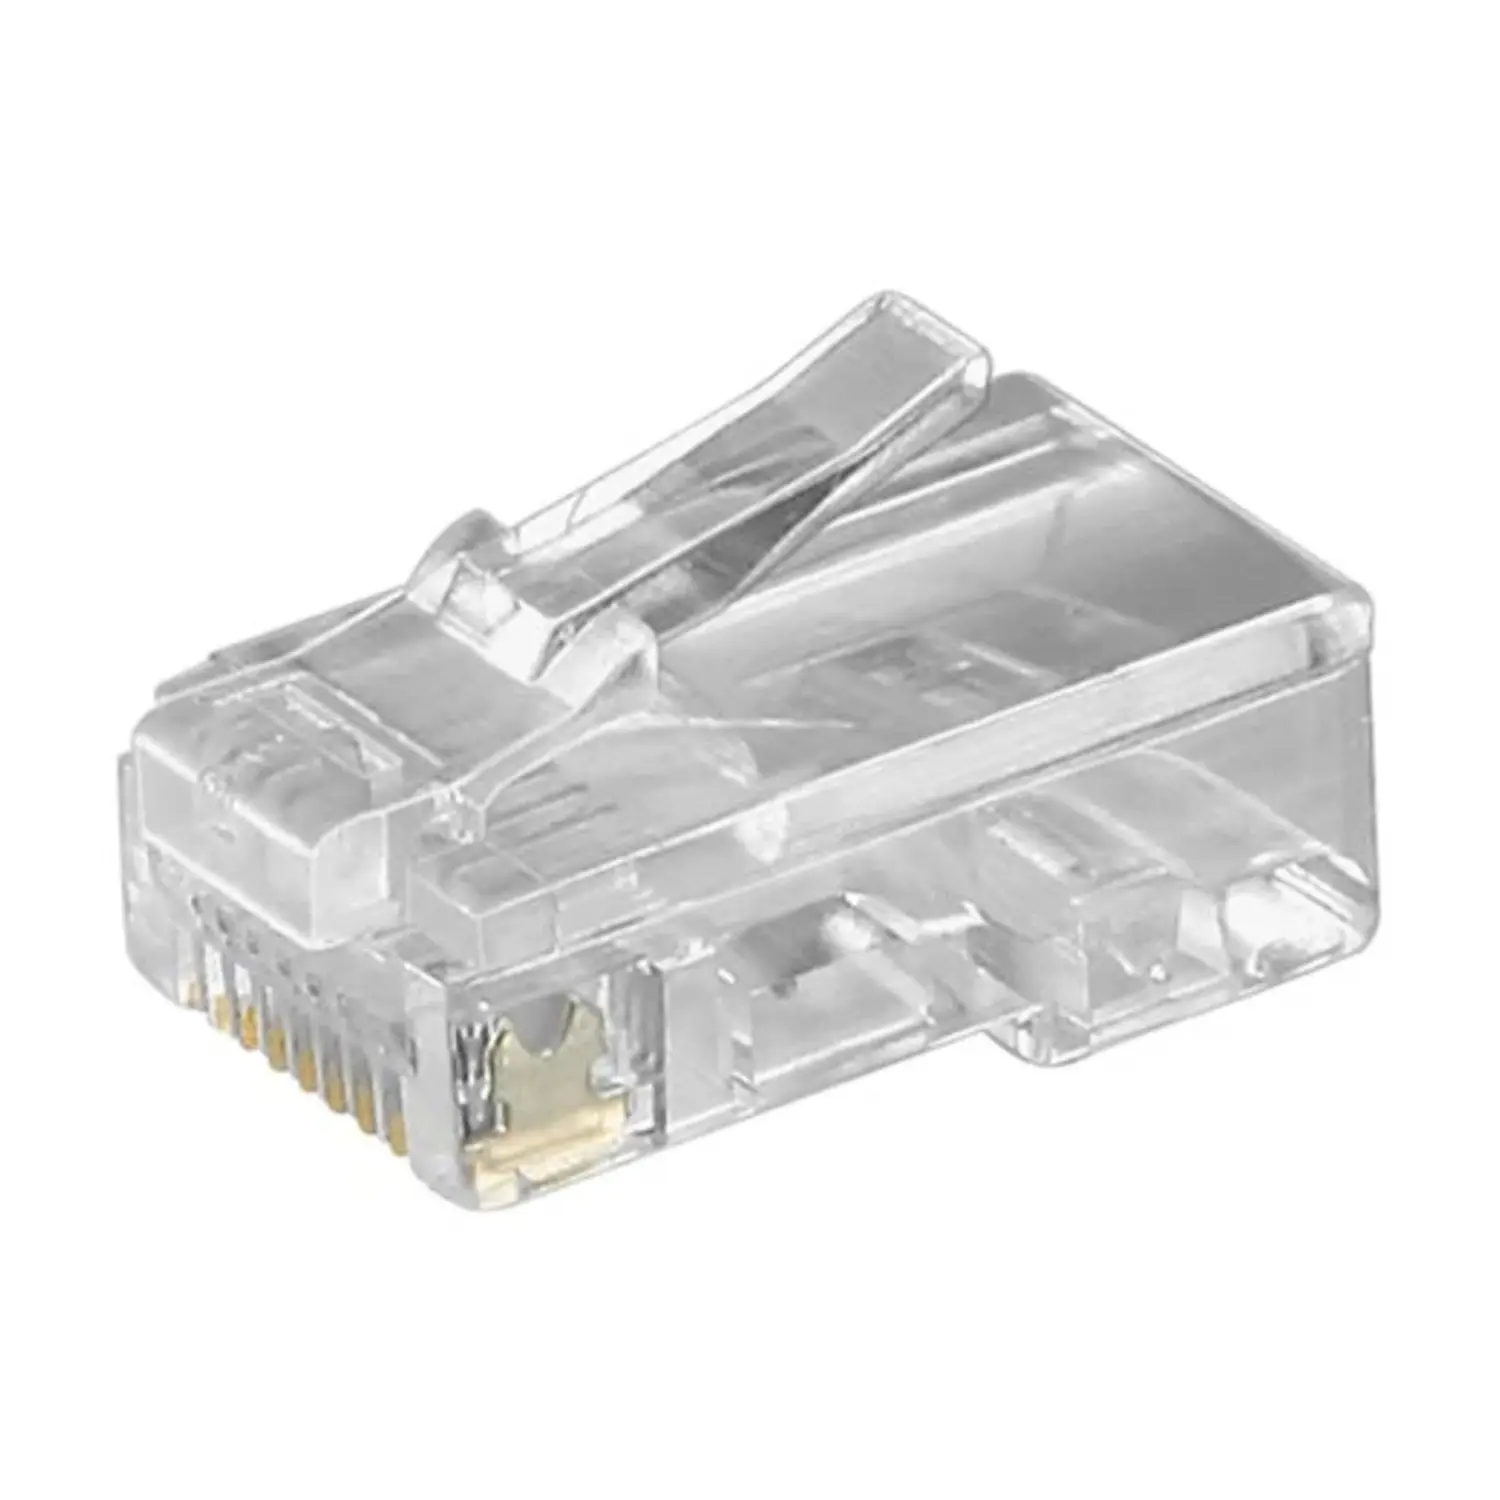 immagine del prodotto spina modulare plug di rete per cavi piatti rj45 8p8c trasparente